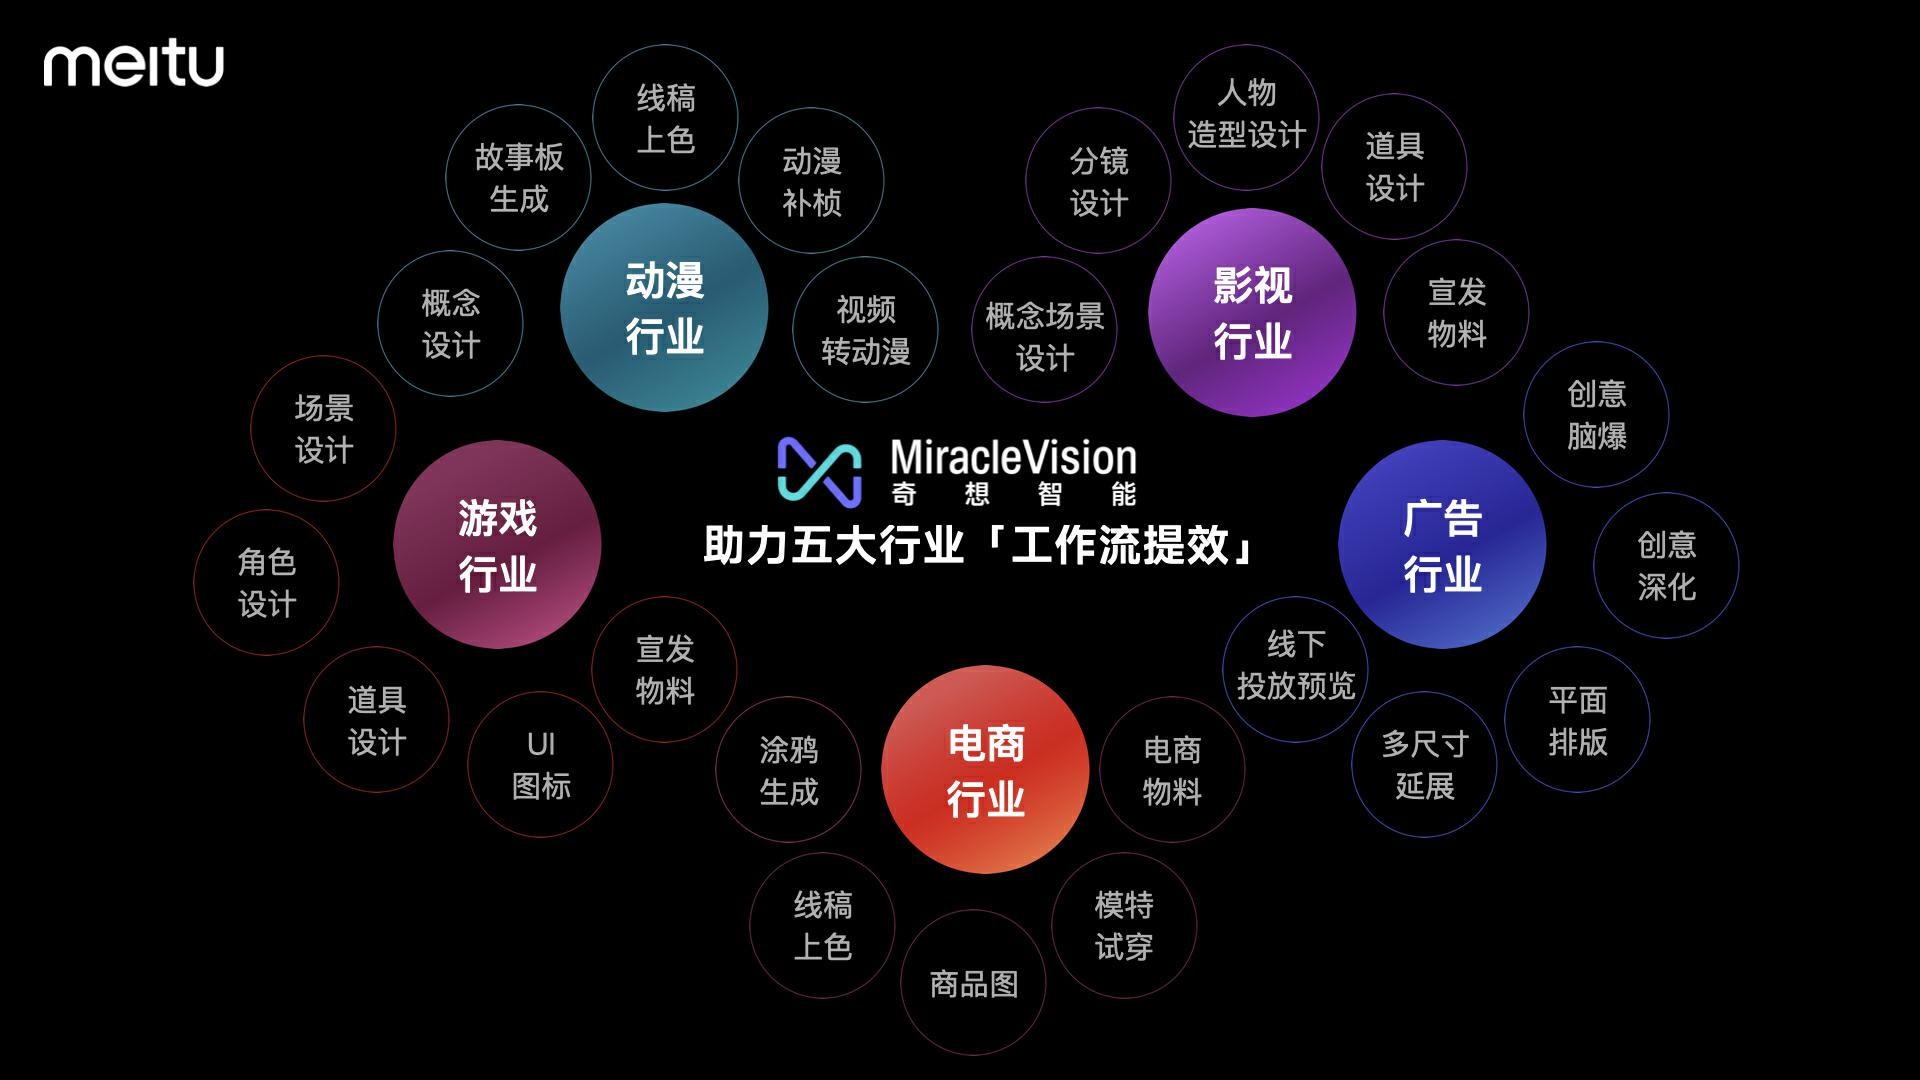 博鱼中国美图自研视觉大模型30发布全面应用于美图旗下影像与设计产品(图5)